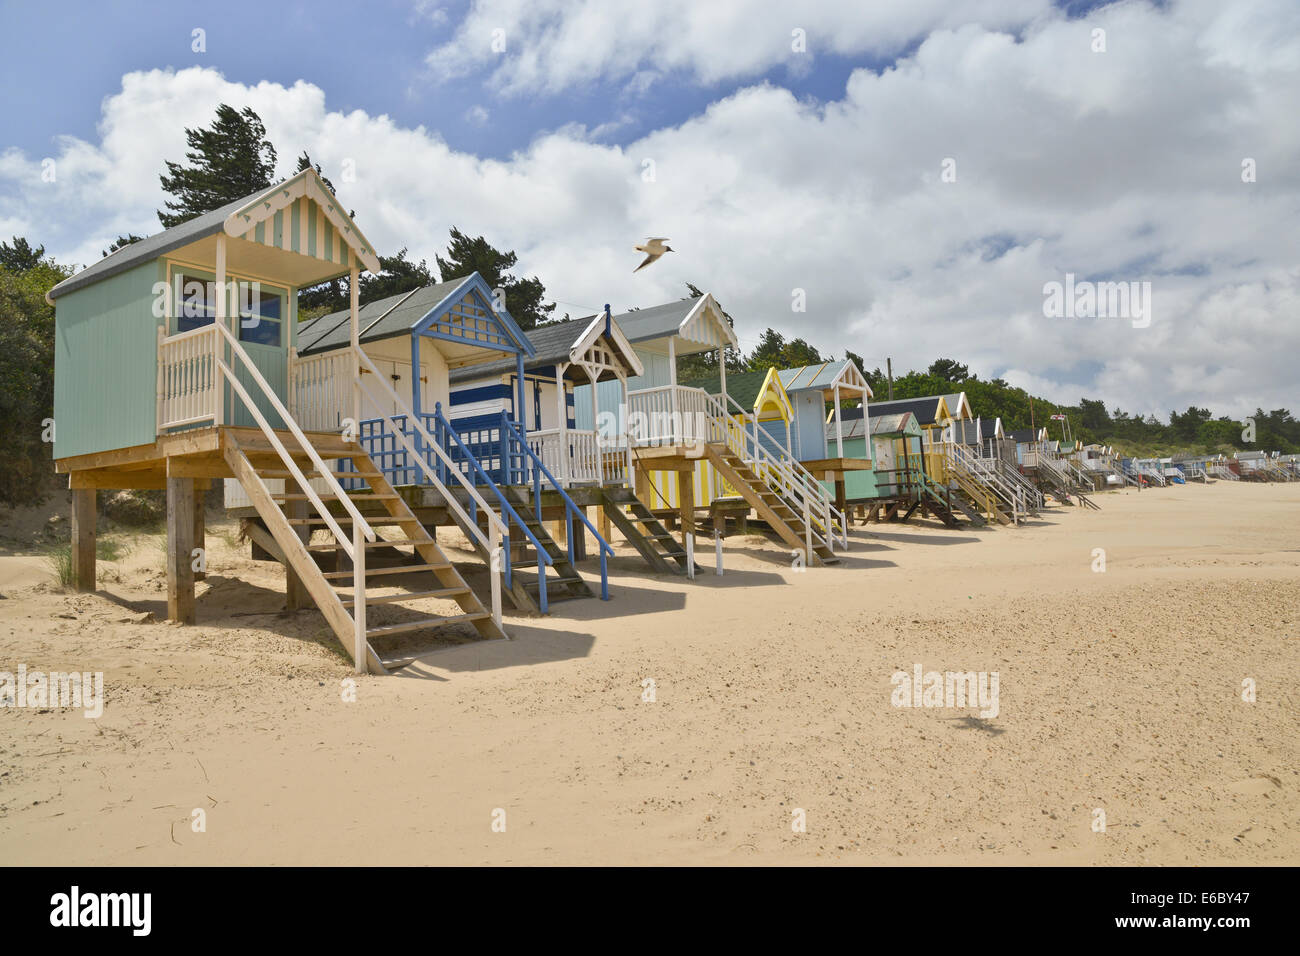 Cabines de plage de Wells Next the sea Norfolk Royaume Uni Angleterre Banque D'Images